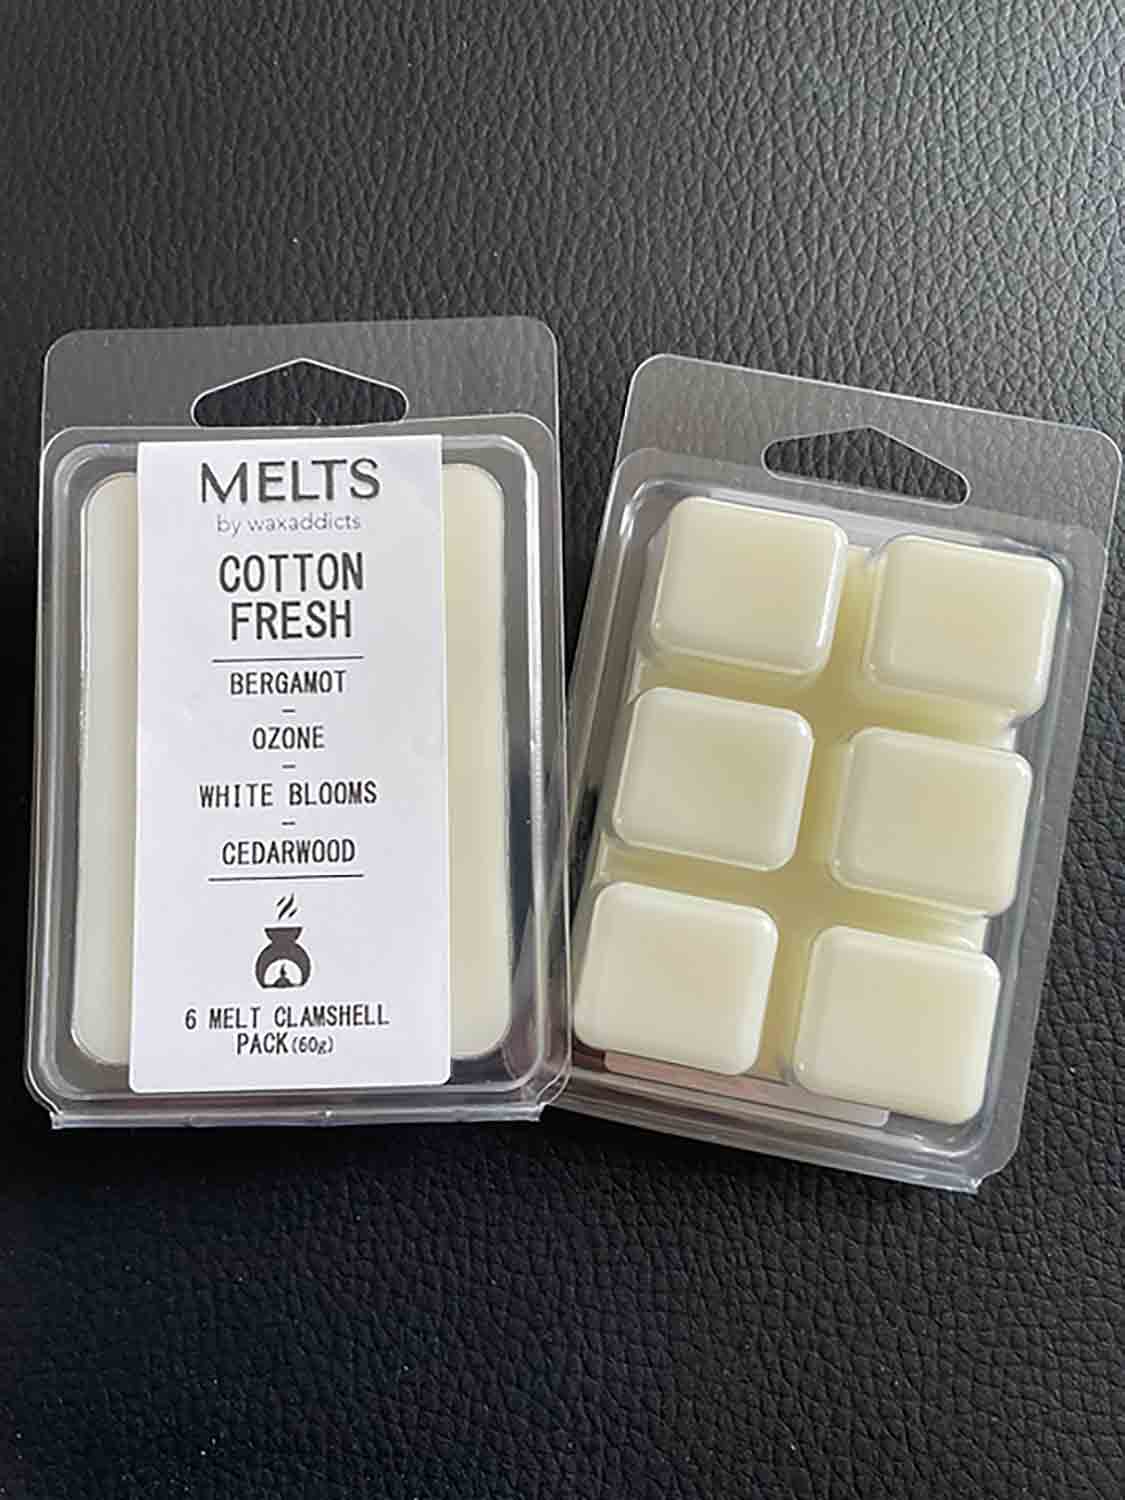 Cotton Fresh 60 g vonný vosk